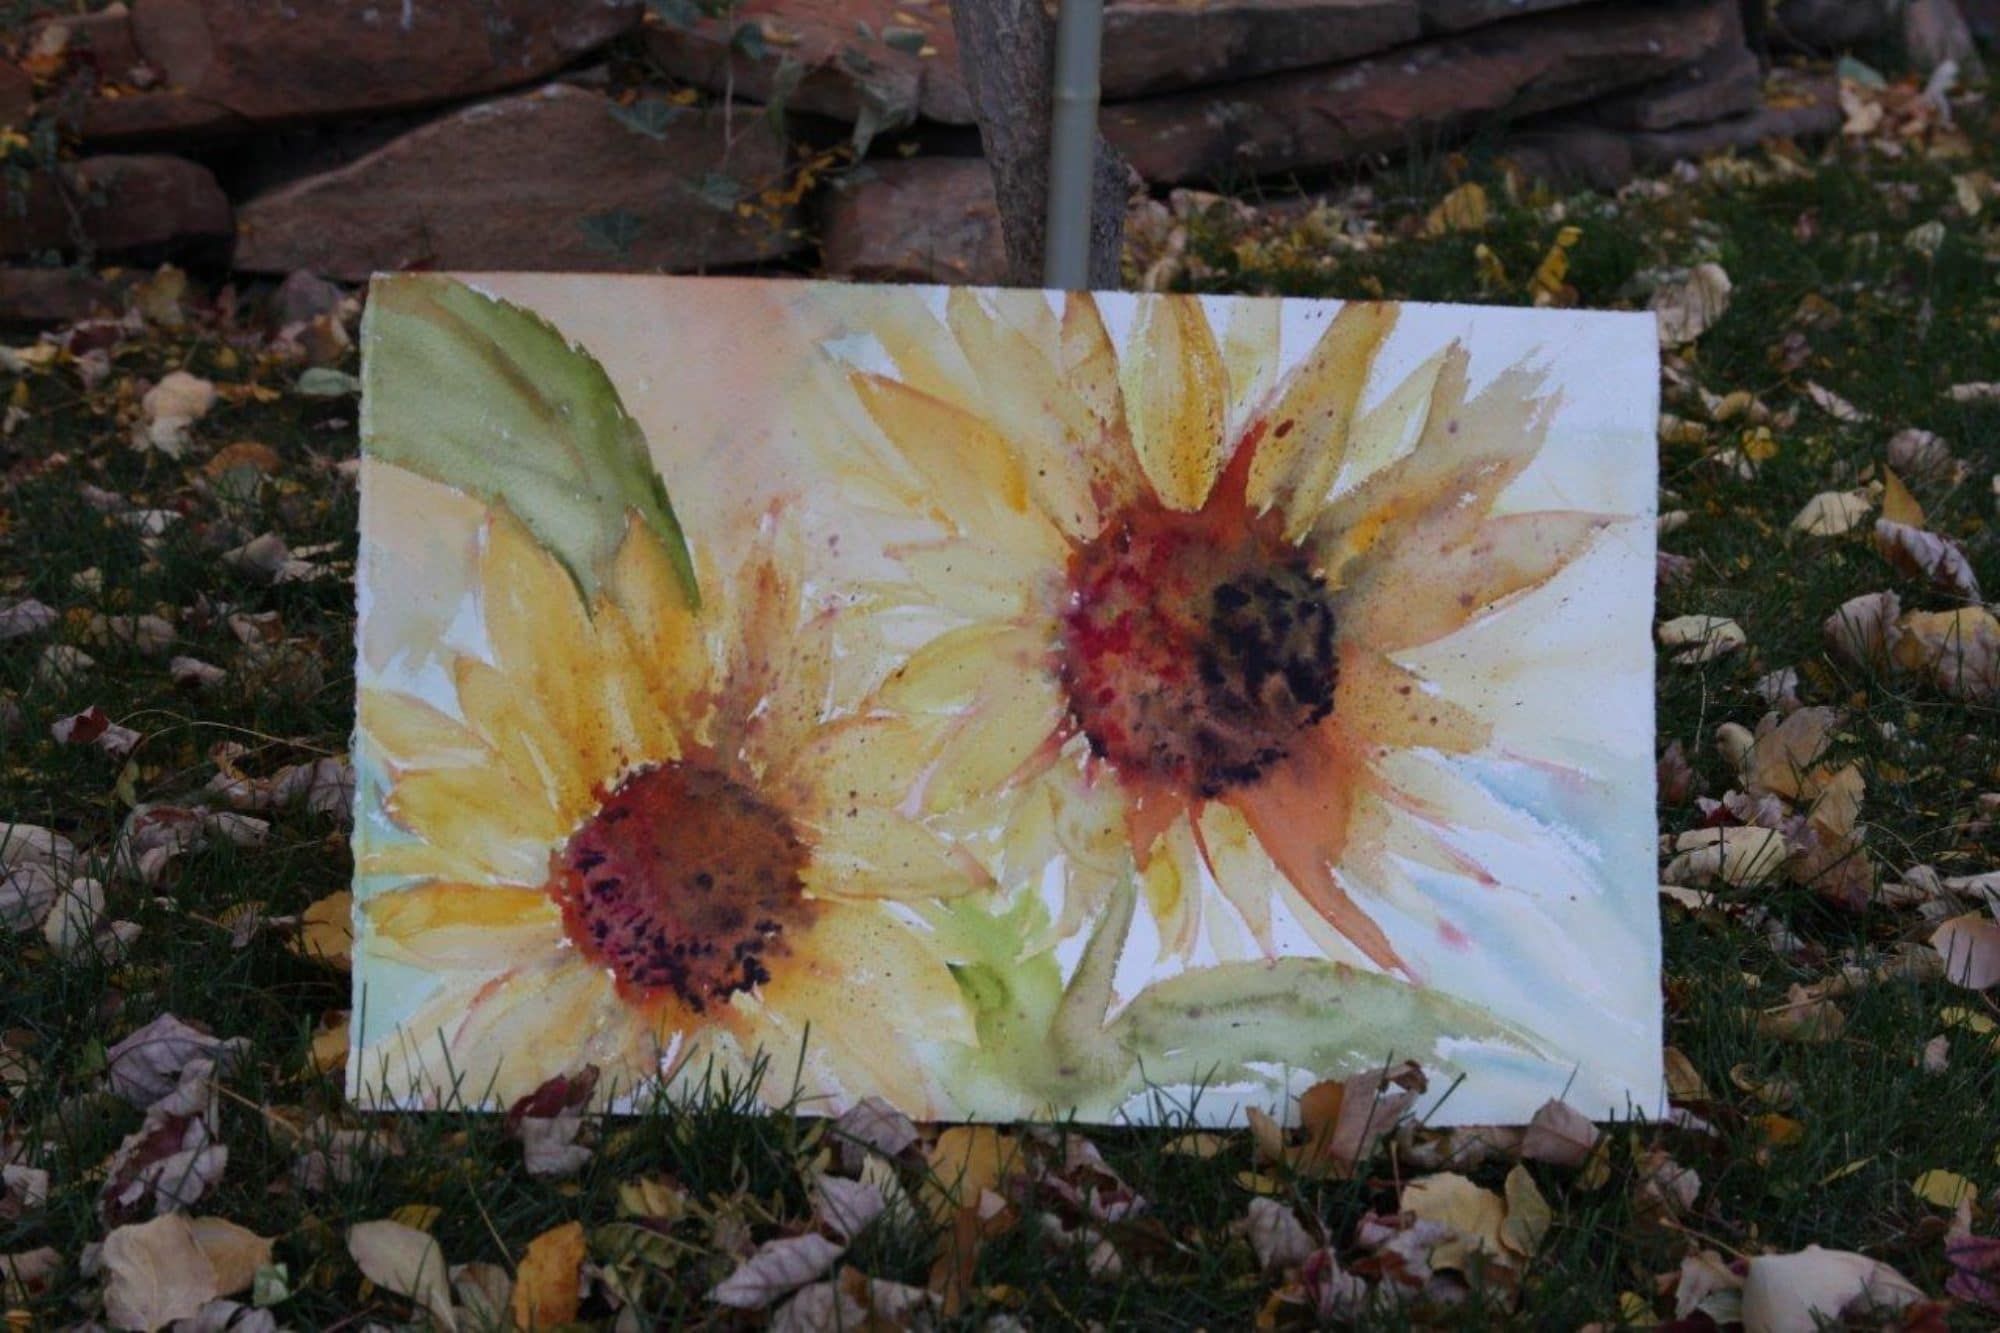 Sunflower Pair